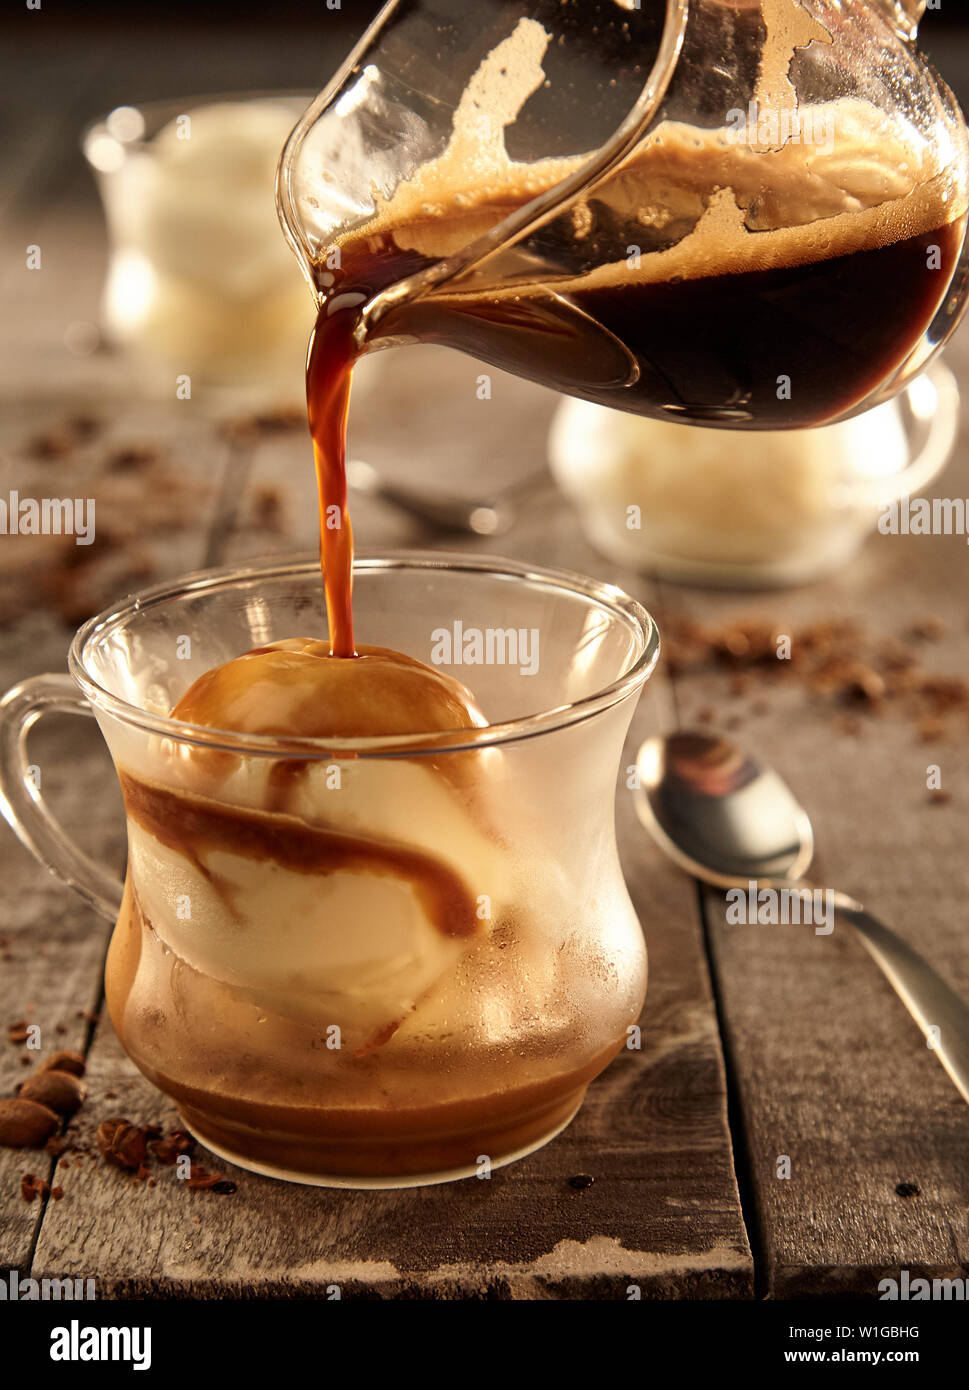 Afogato - Espresso and Ice Cream Stock Photo